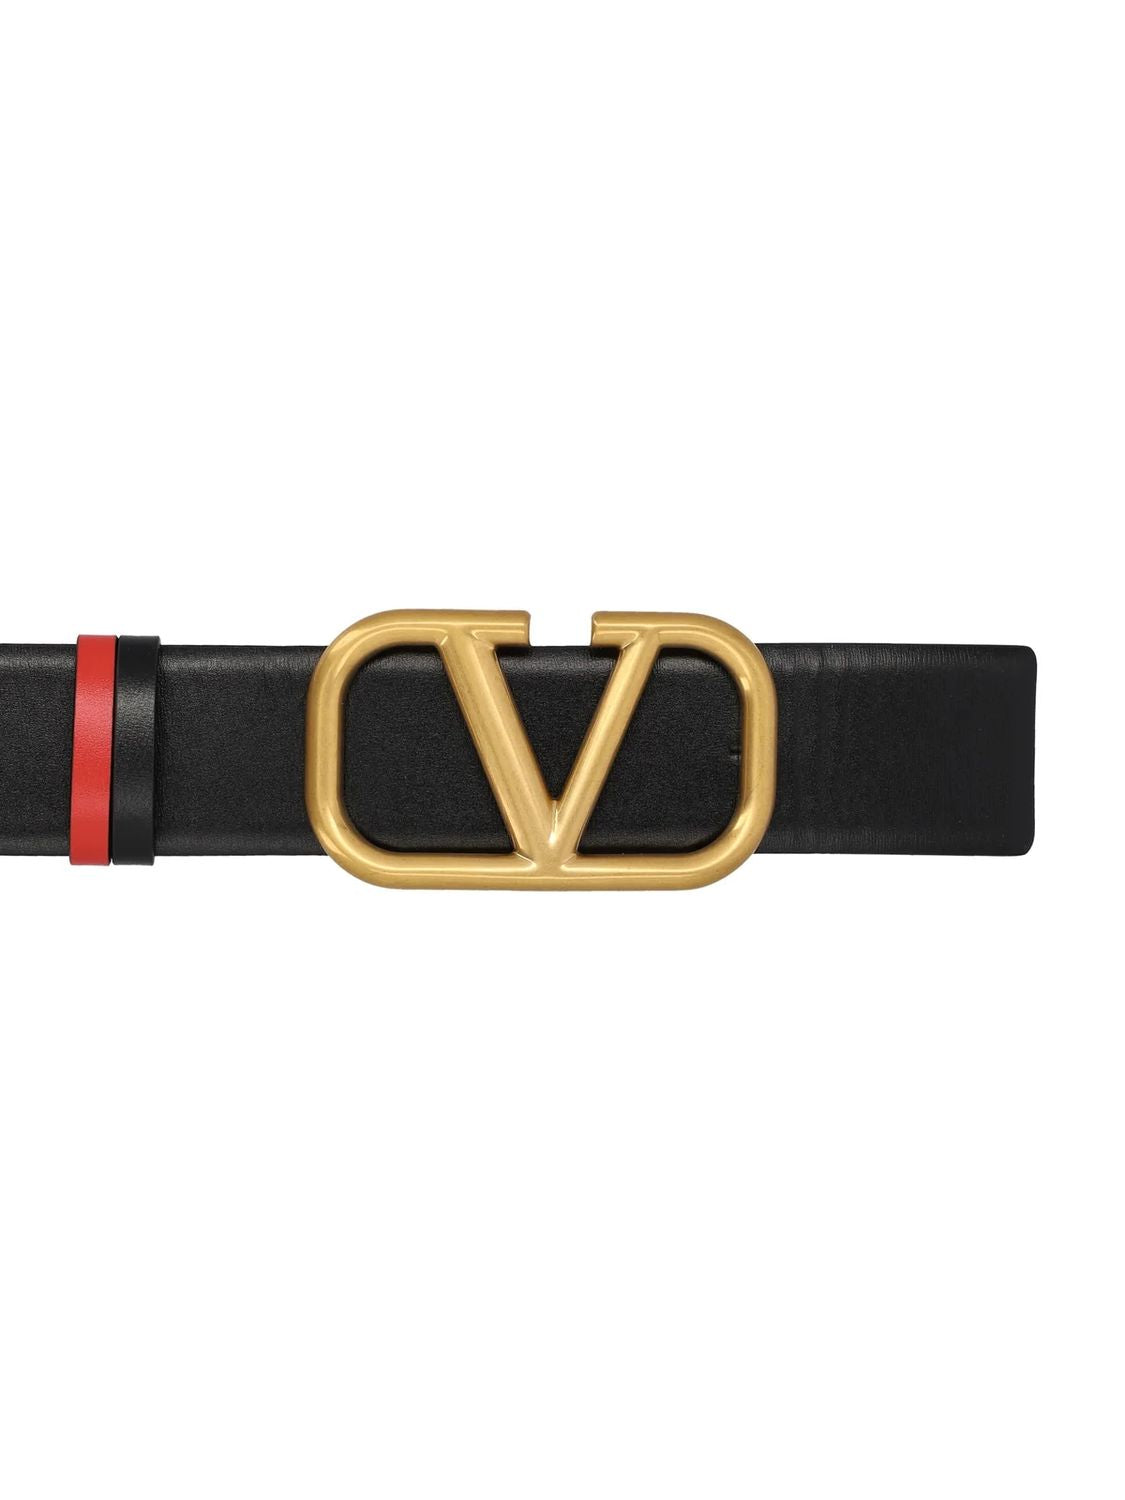  حزام توقيع VLogo للتحويل القابل للعكس 40 مم - باللون الأسود والأحمر للنساء